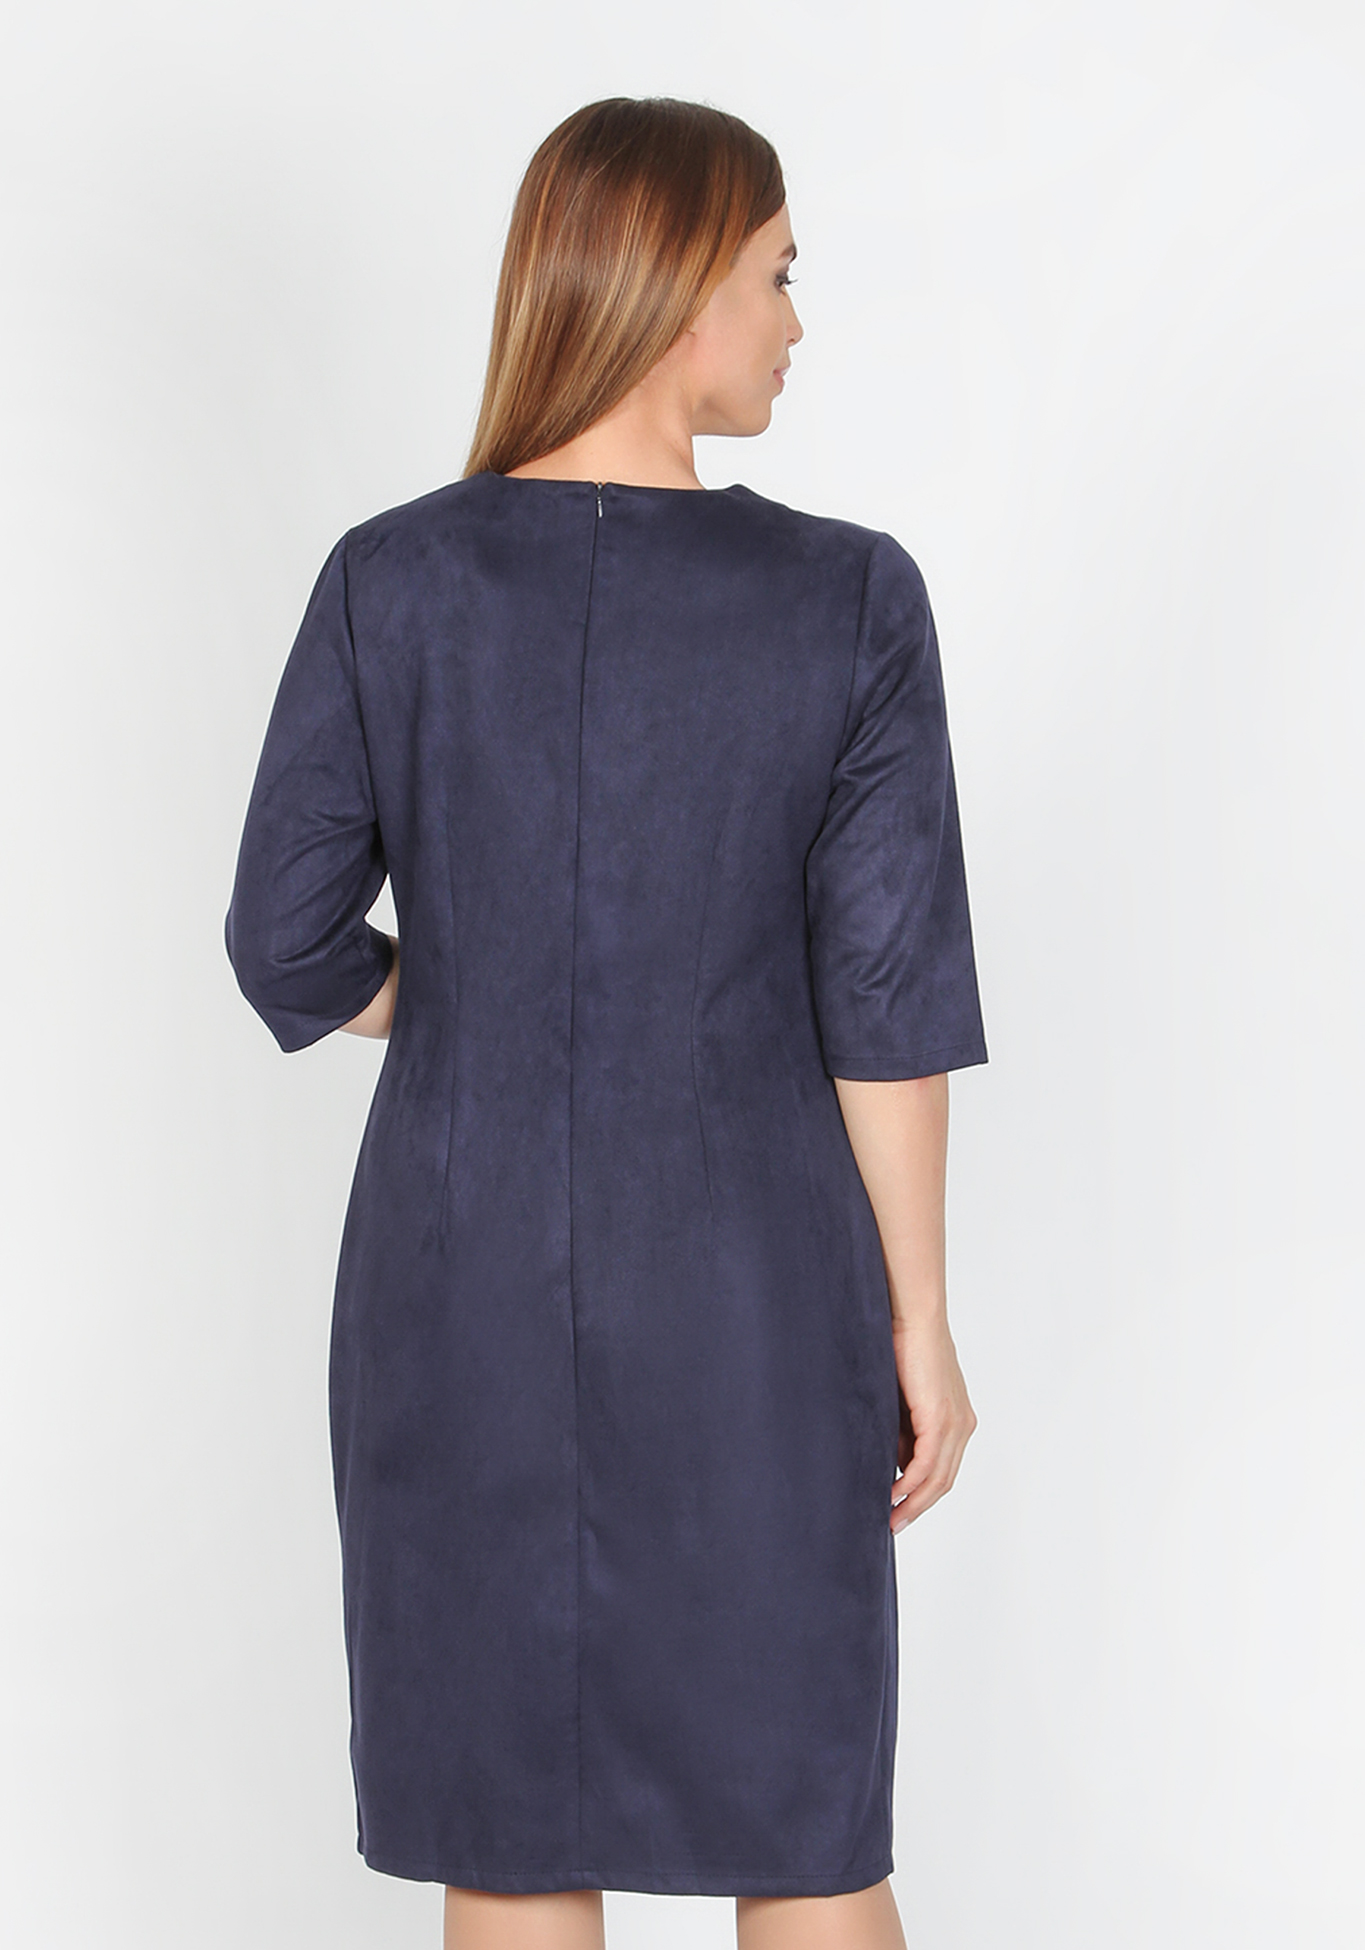 Платье «Серебряные брызги», размер 52, цвет темно-синий - фото 3